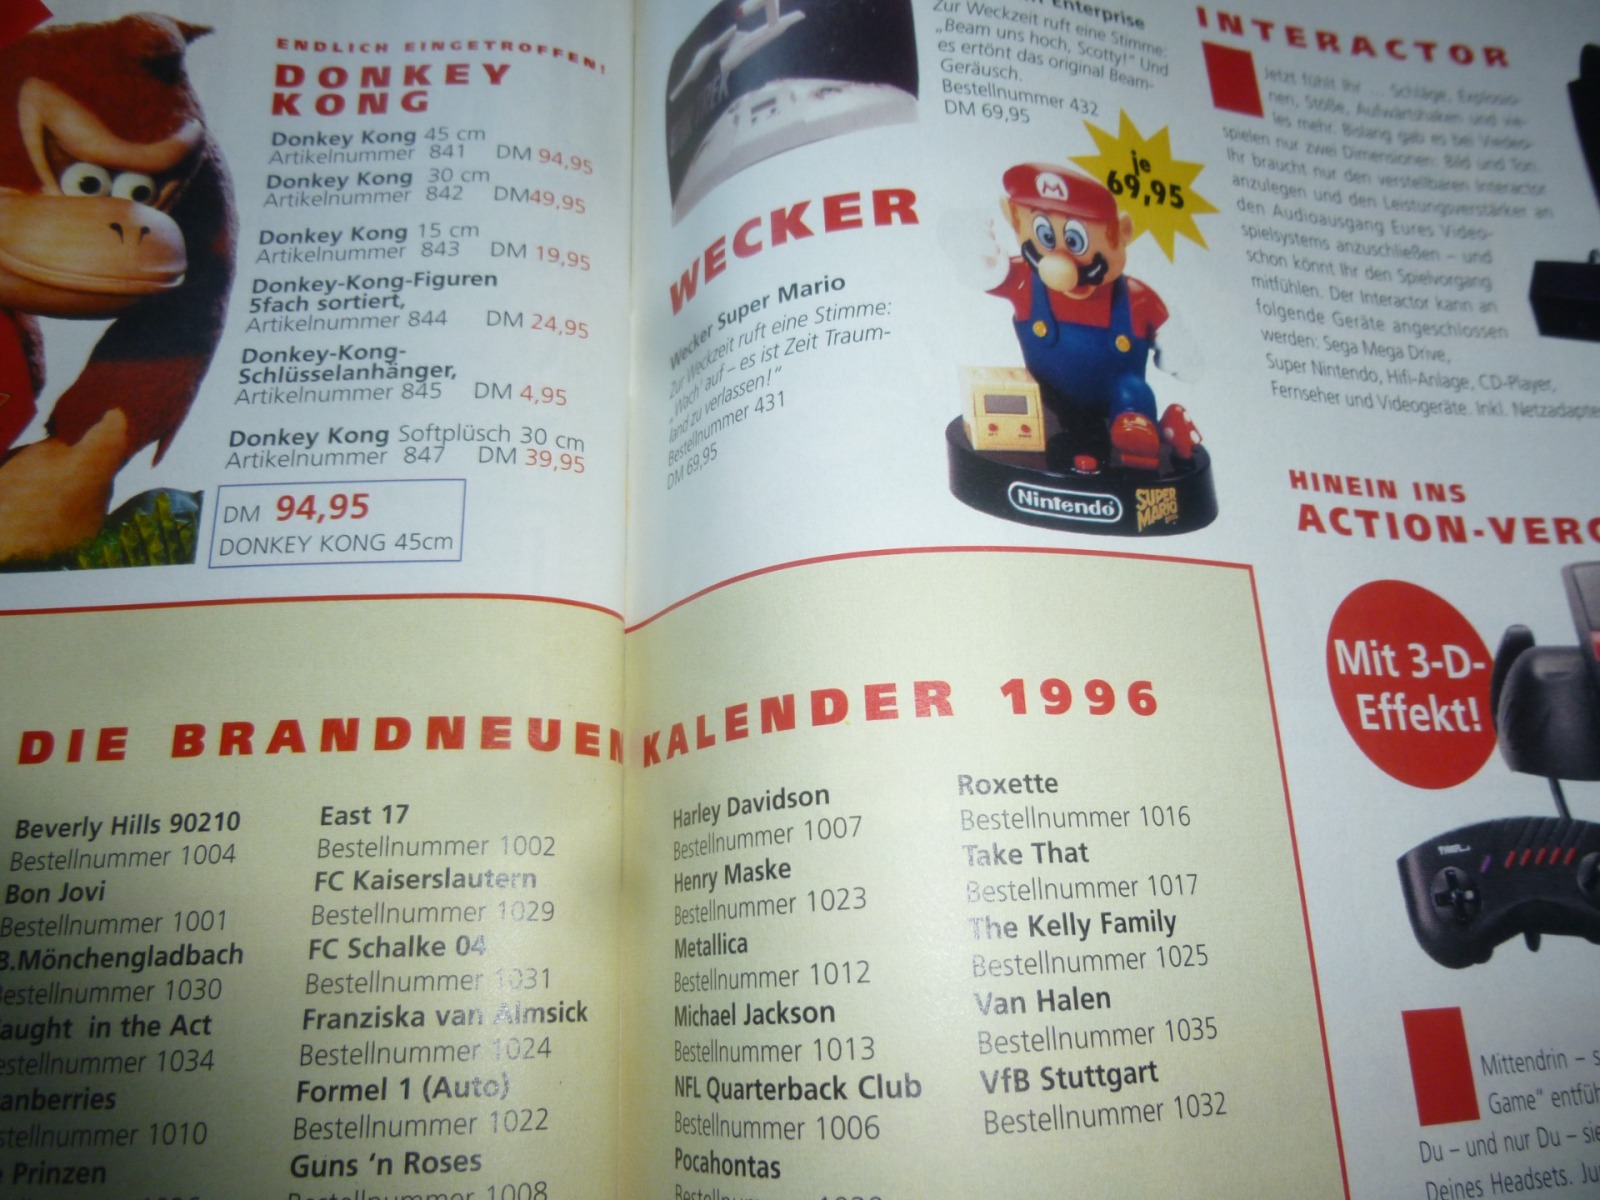 TOTAL Das unabhängige Magazin - 100 Nintendo - Ausgabe 3/96 1996 23